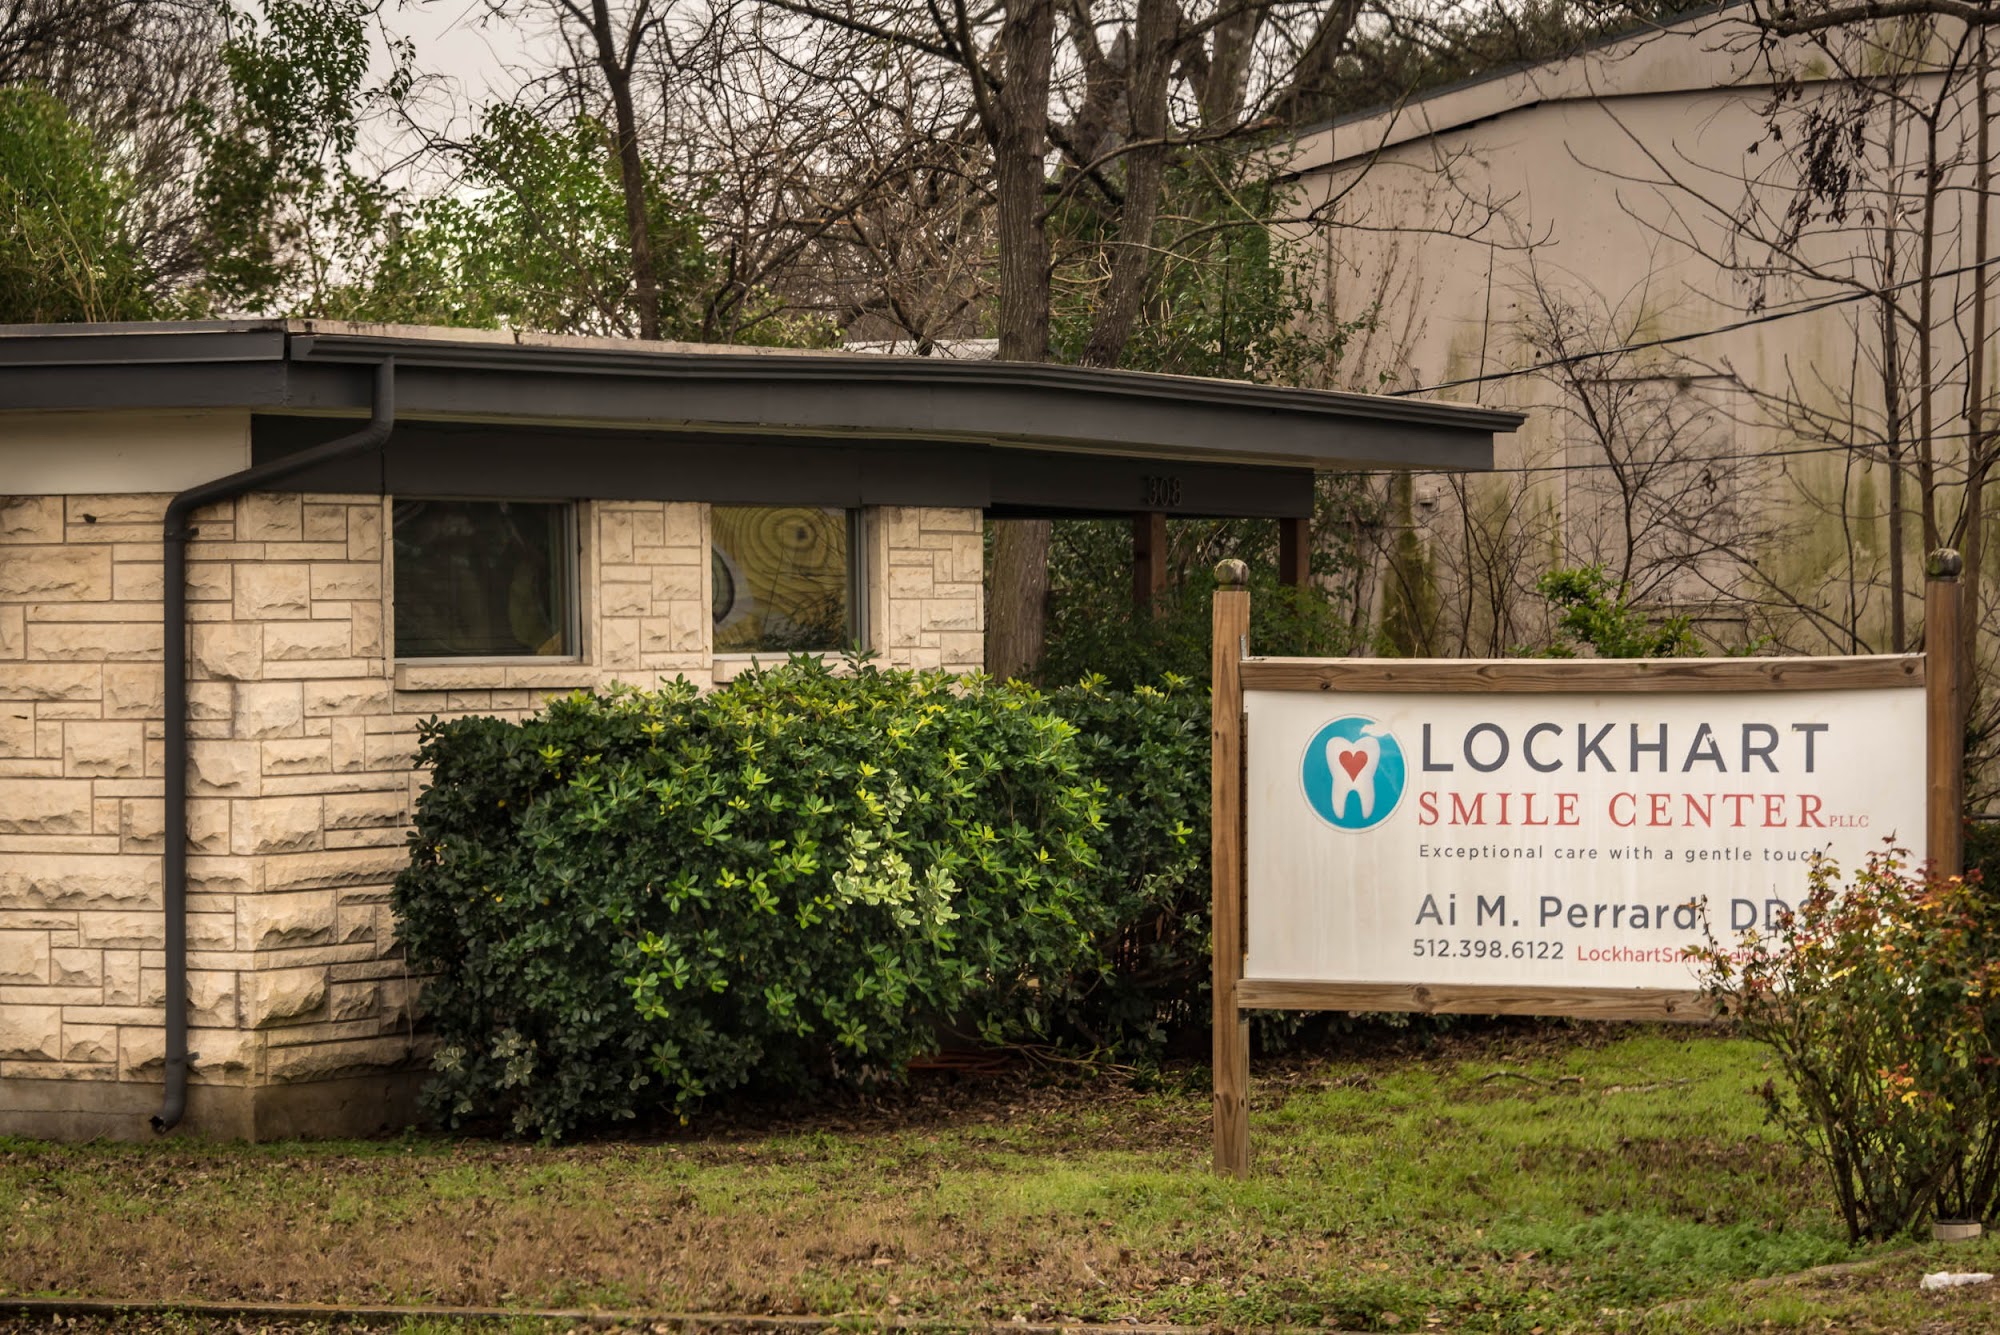 Lockhart Smile Center